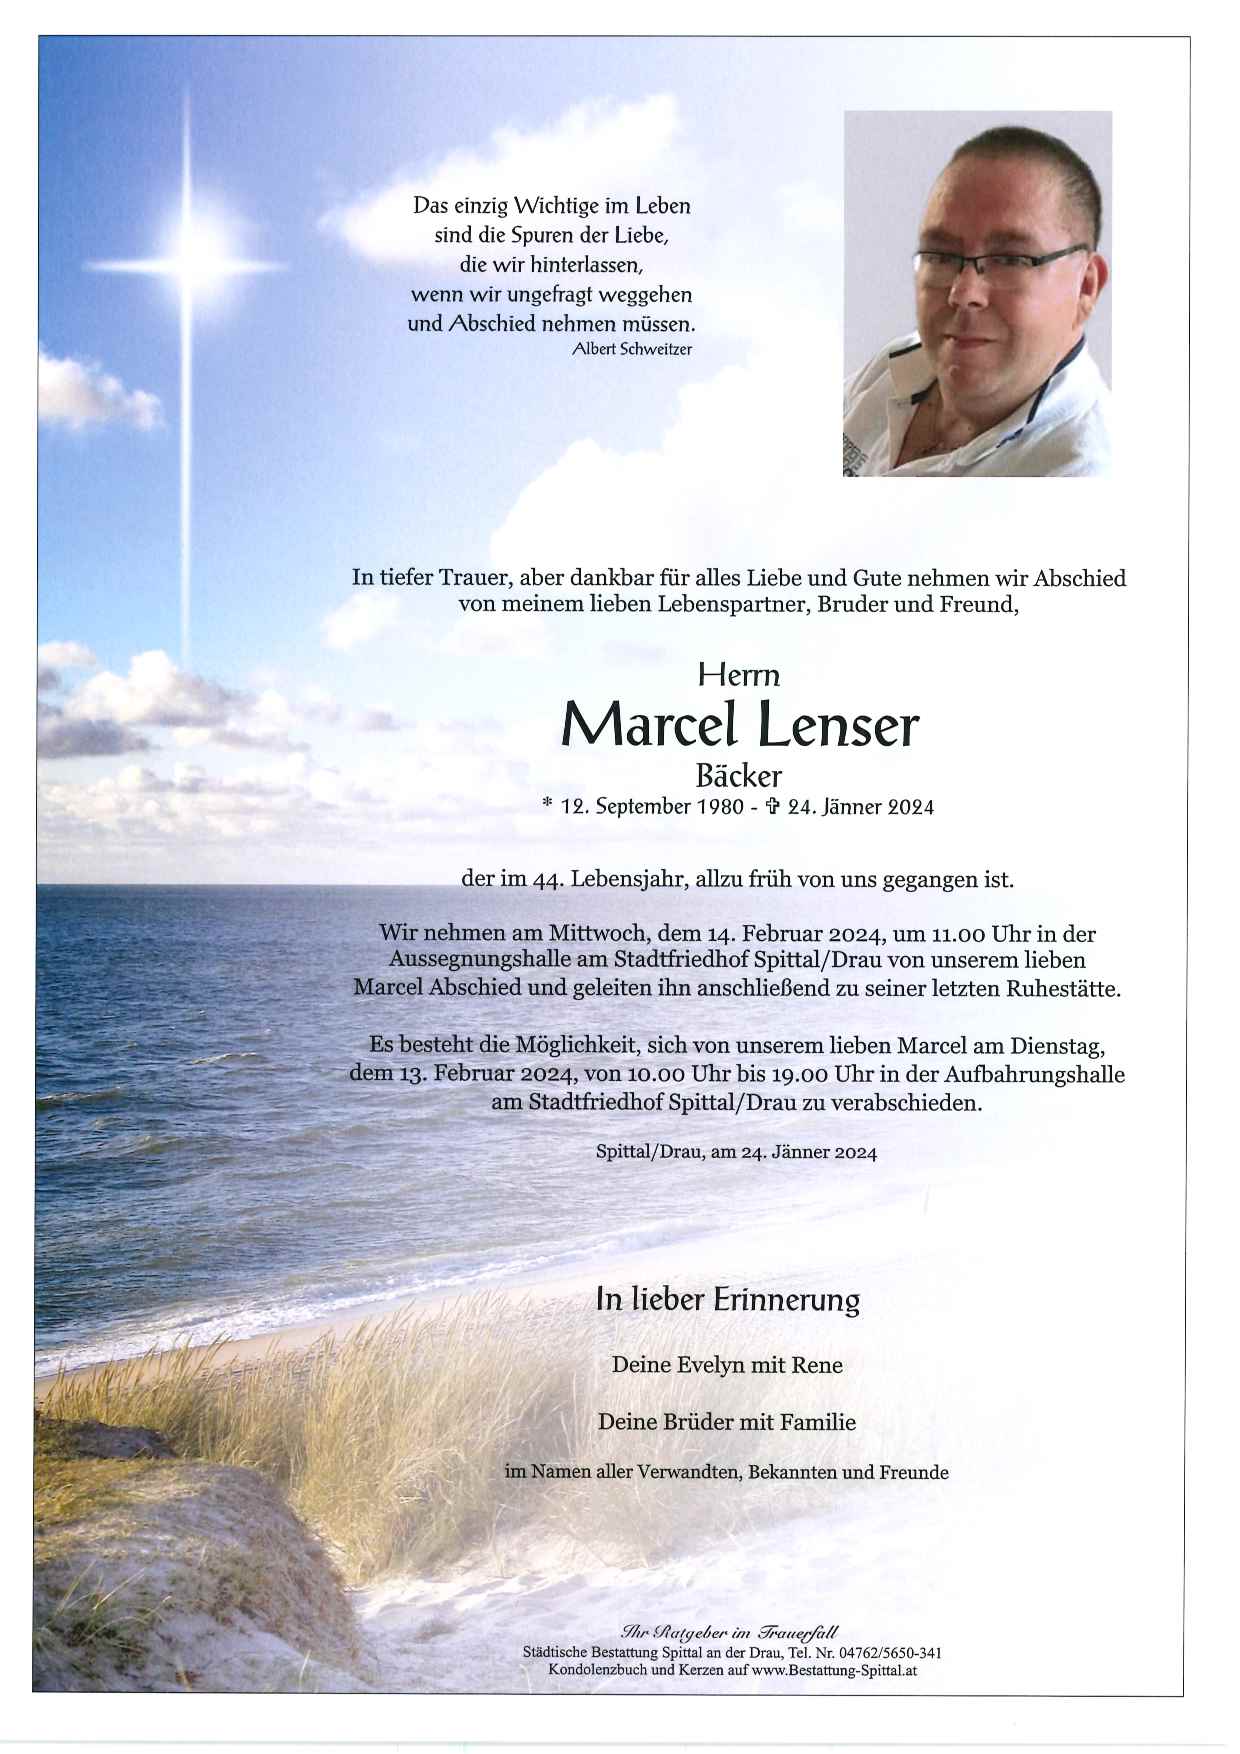 Marcel Lenser